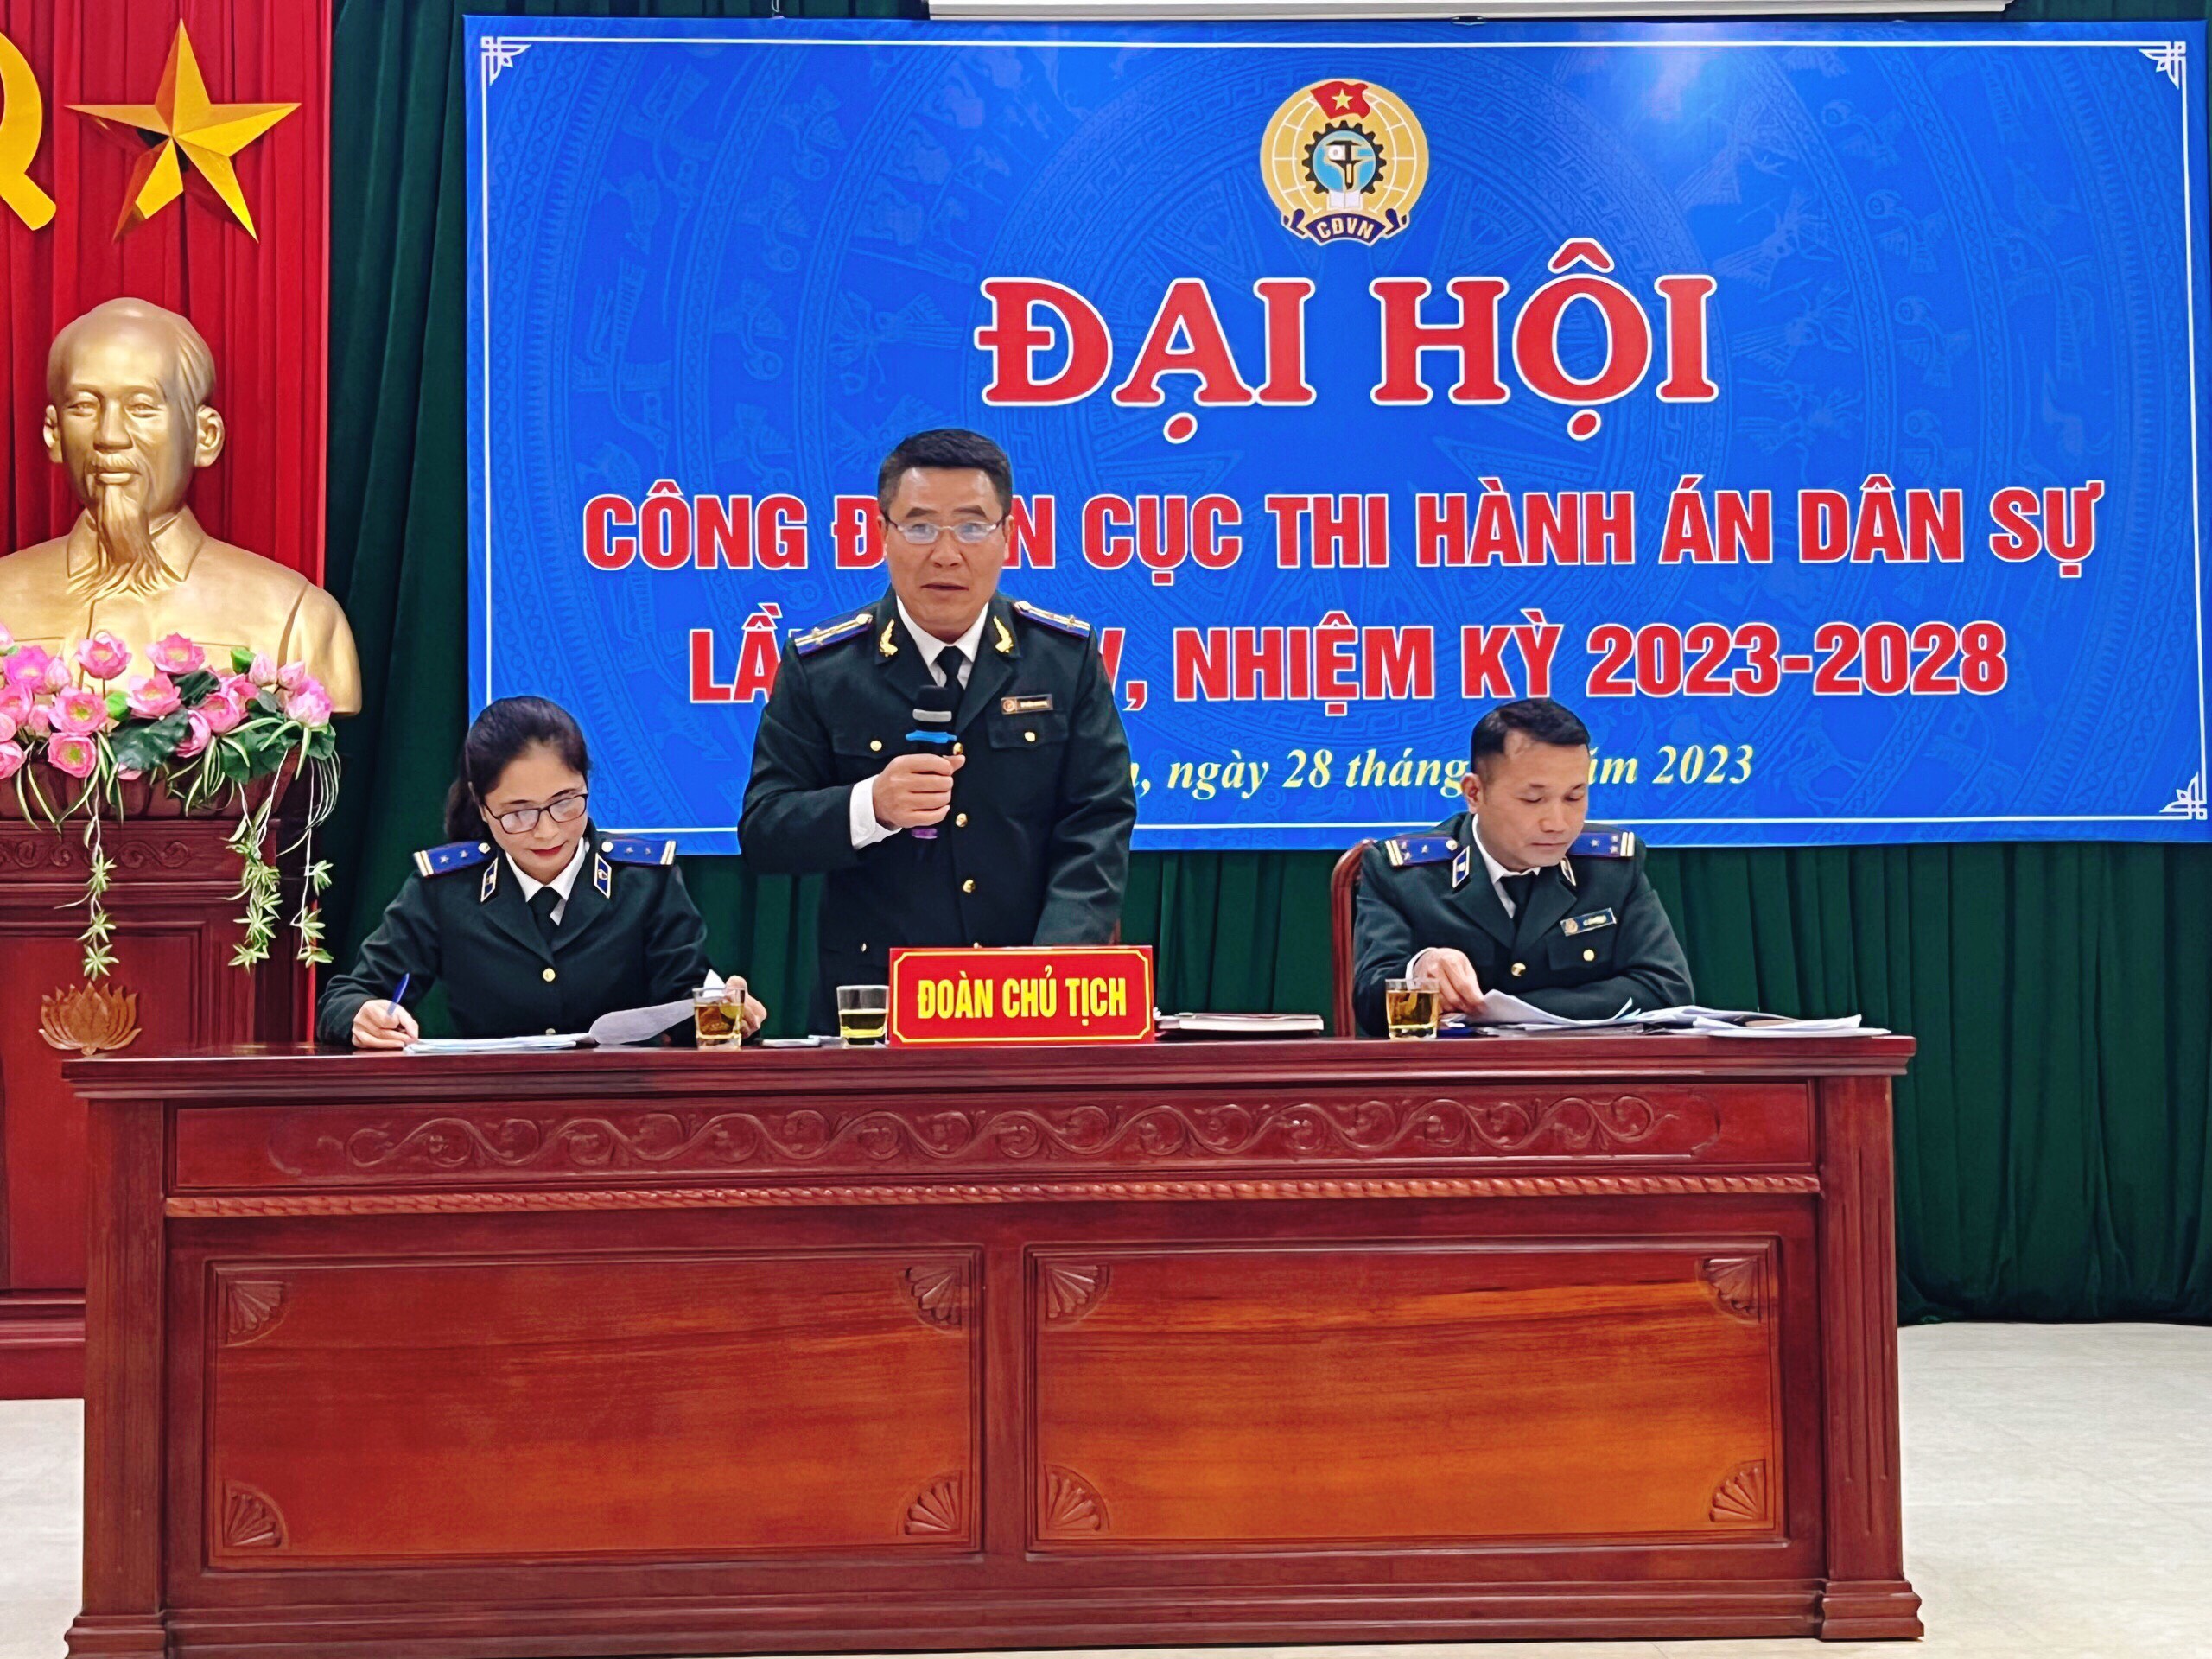 Công đoàn Cục Thi hành án dân sự tỉnh Nghệ An tổ chức thành công Đại hội Công đoàn lần thứ IV, nhiệm kỳ 2023 – 2028